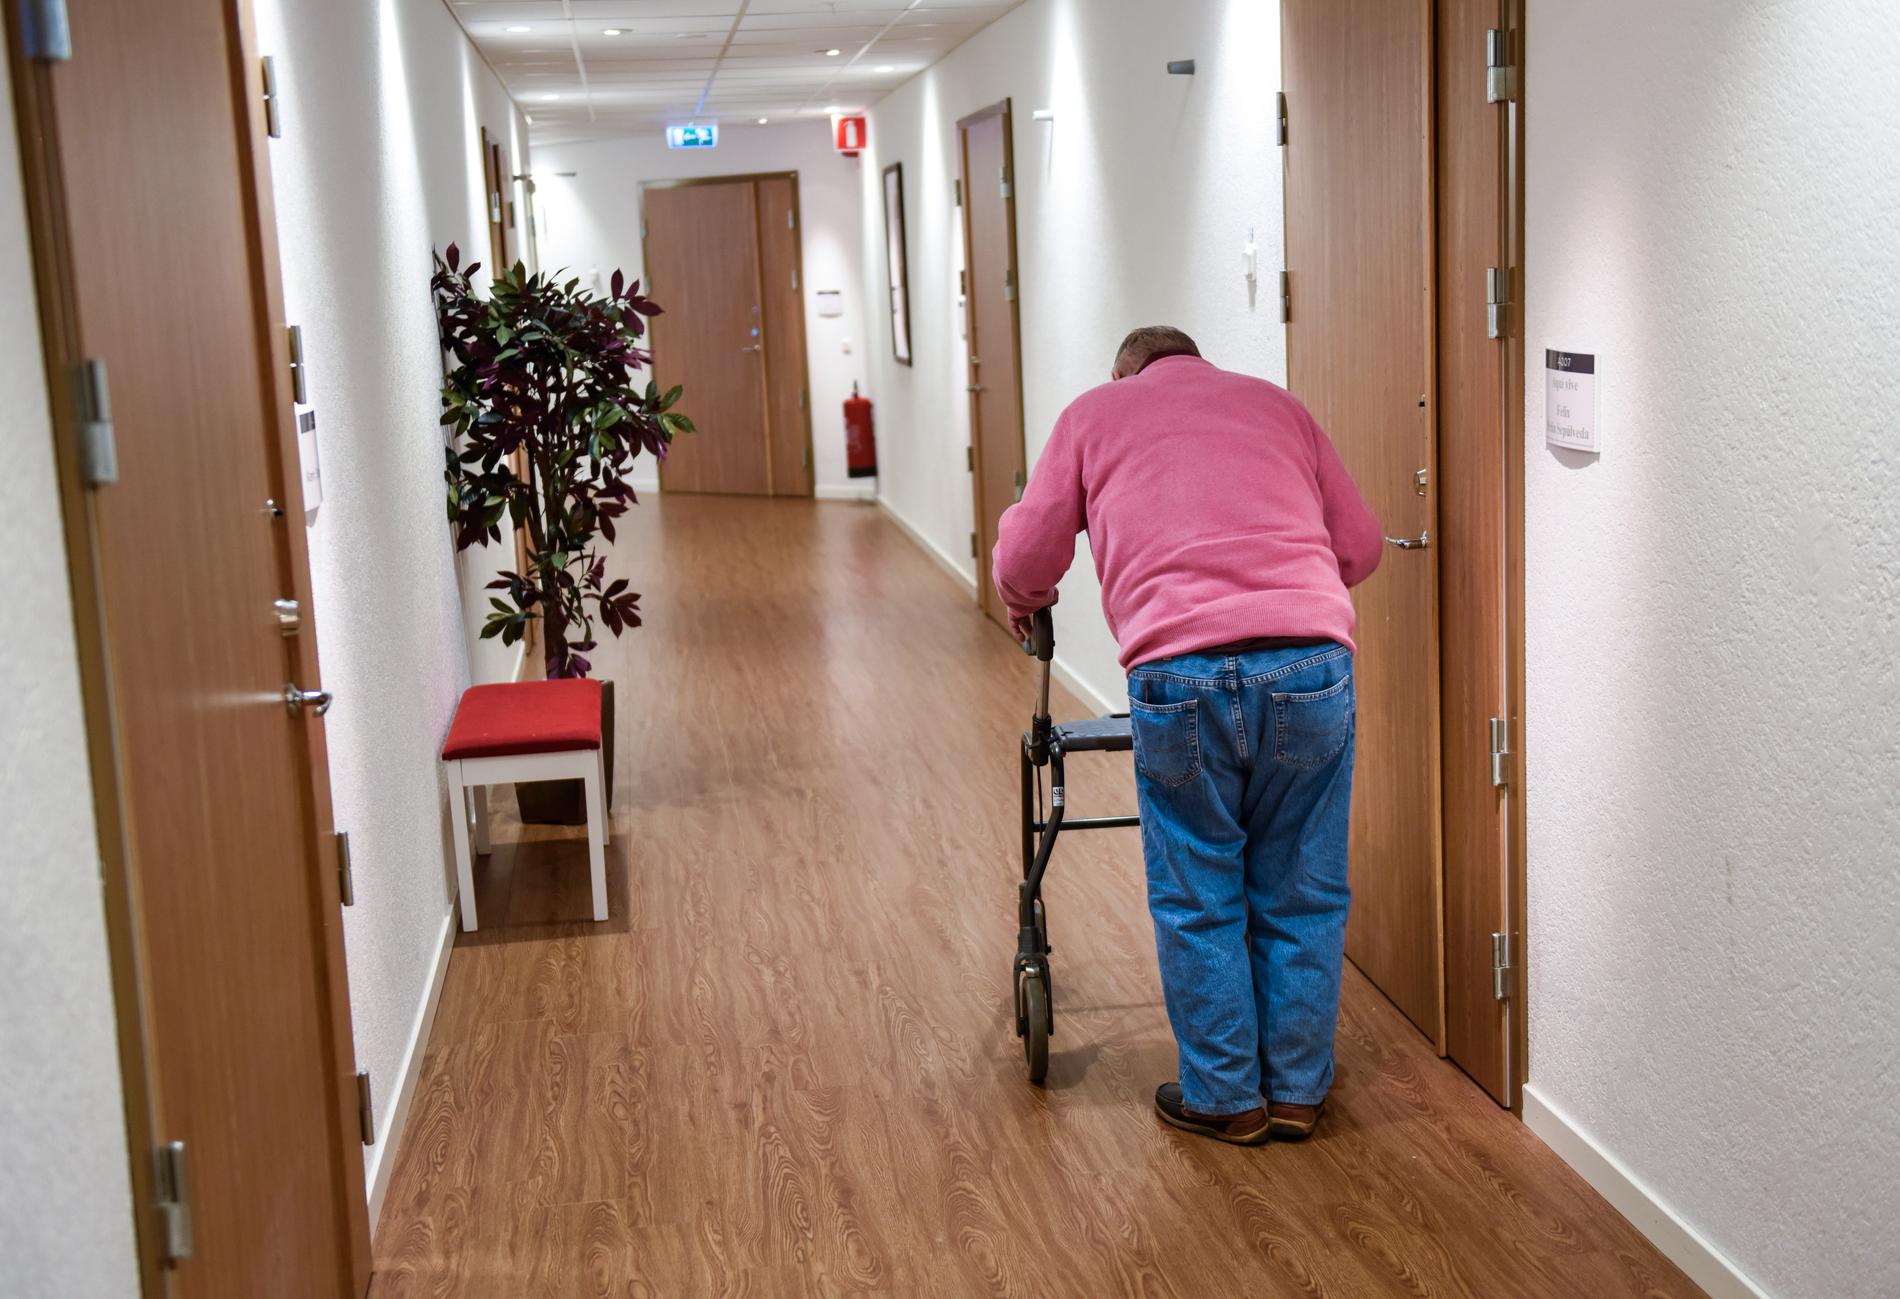 De äldre fler och sjukare, vilket kommer att kräva att många fler jobbar inom äldreomsorgen. Men det är svårt att rekrytera och behålla personal. Bilden är från äldreboendet La Casa i Hägersten i Stockholm.